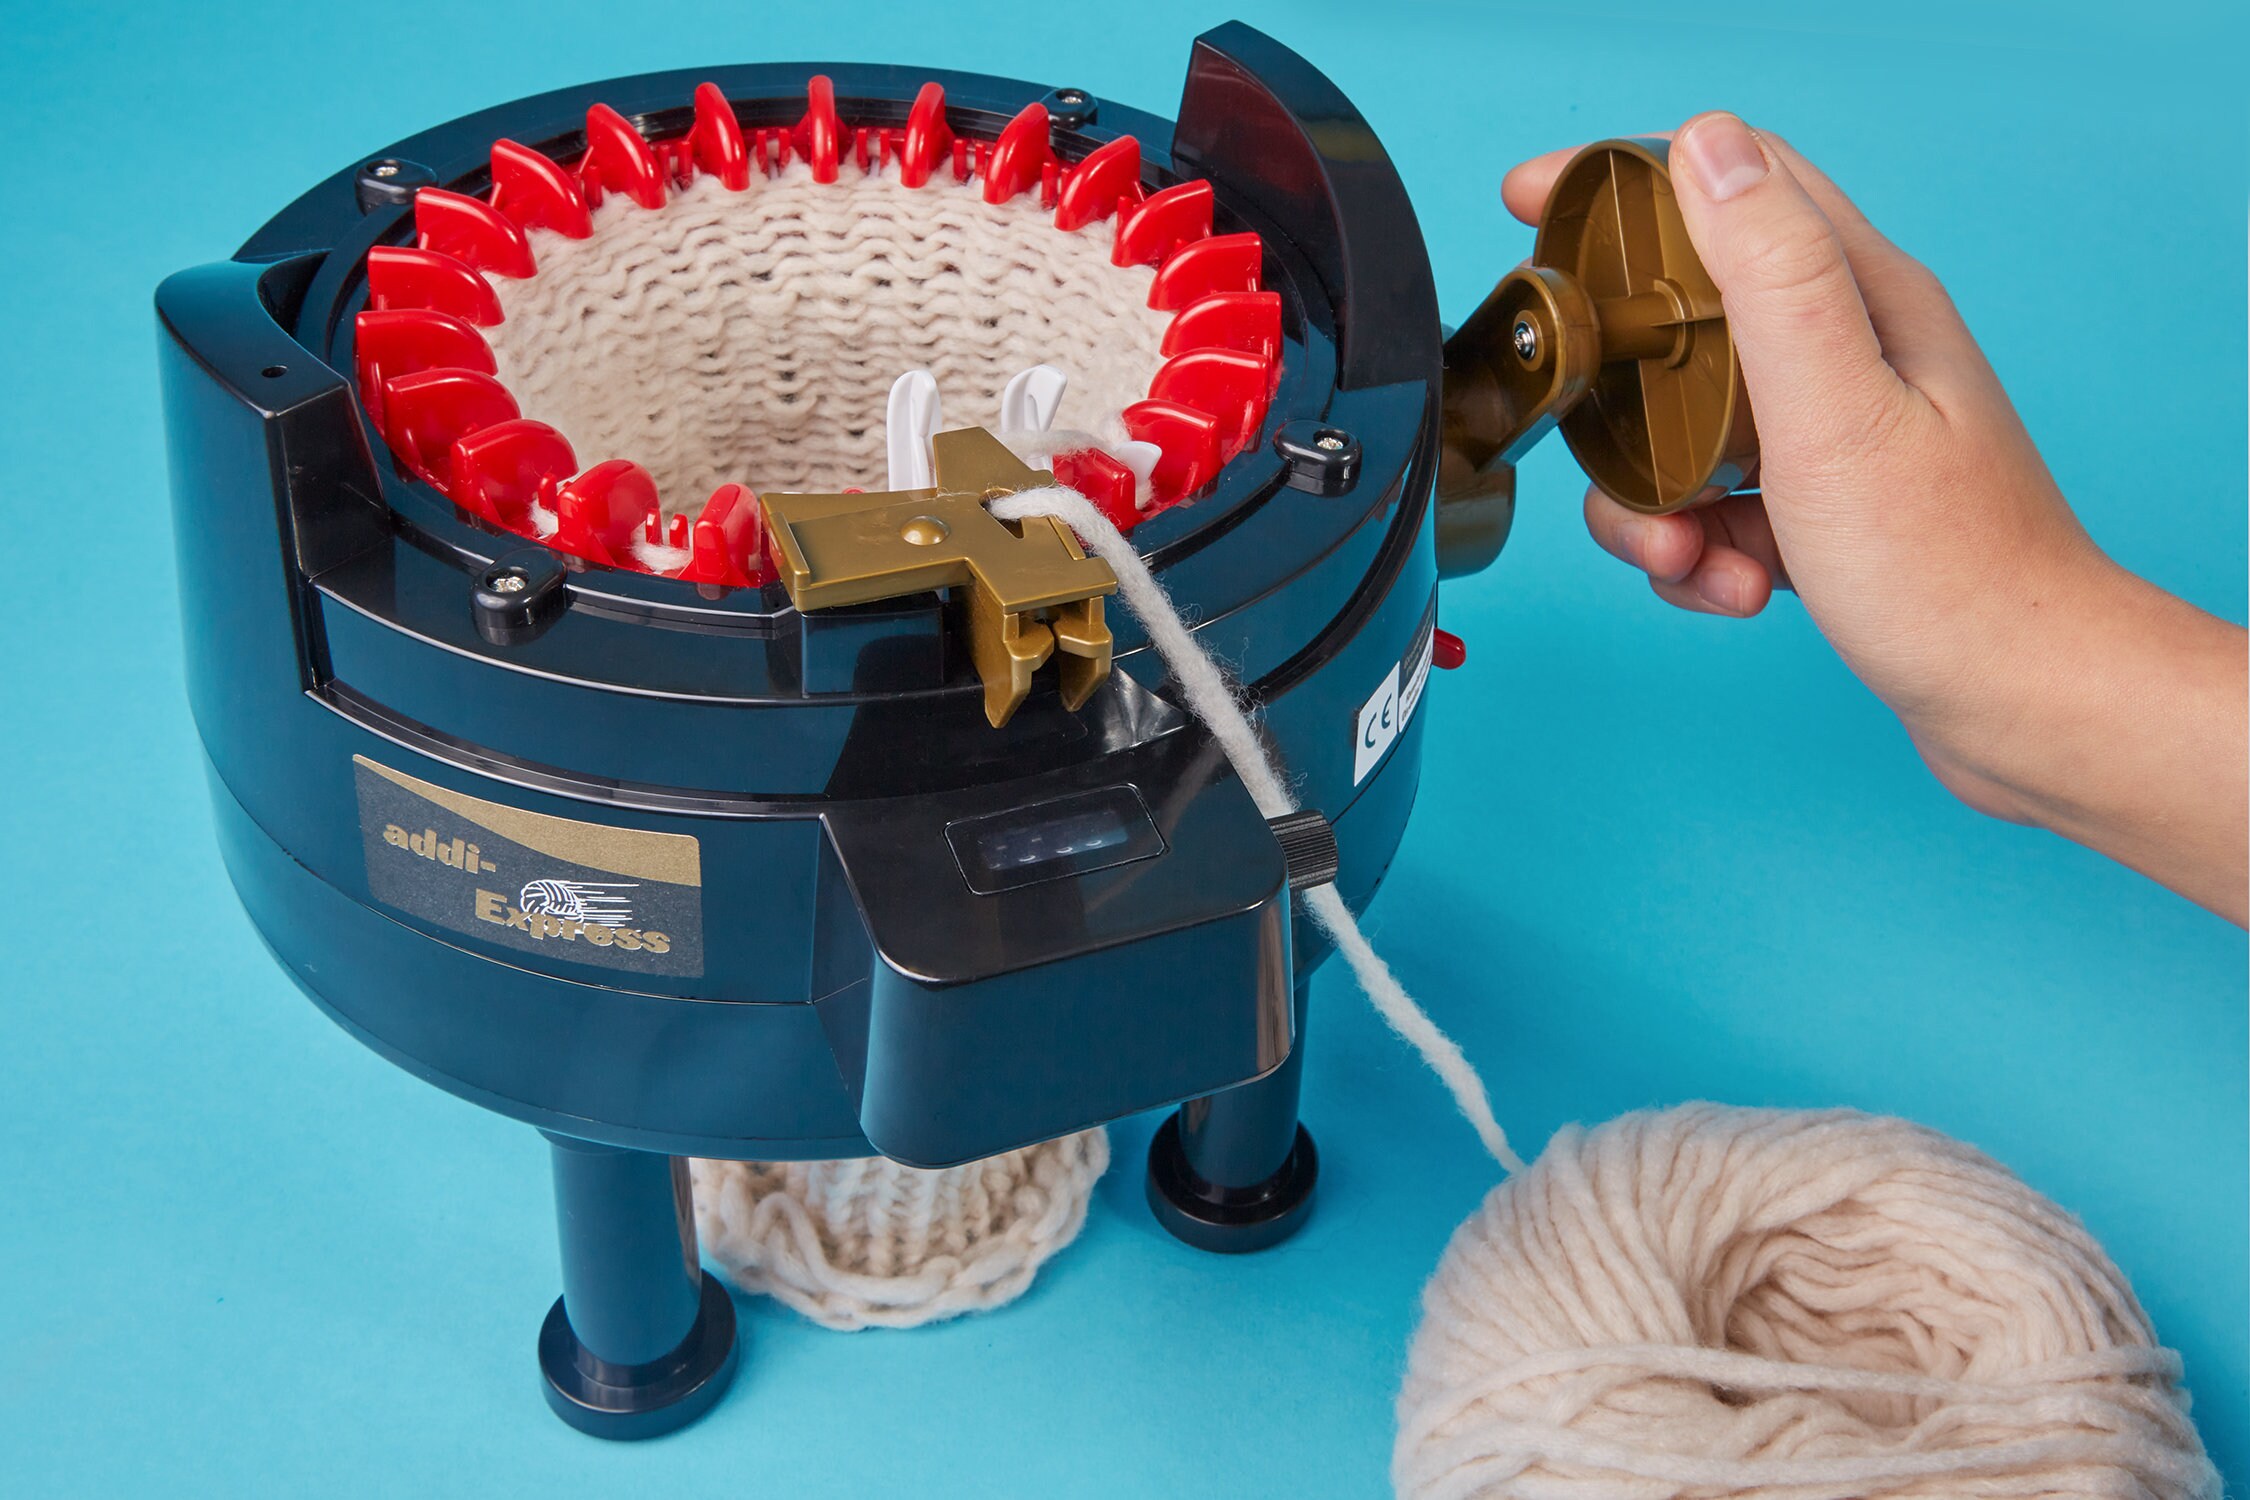 Addi Express Knitting Machine With 22 Needles 990-2 